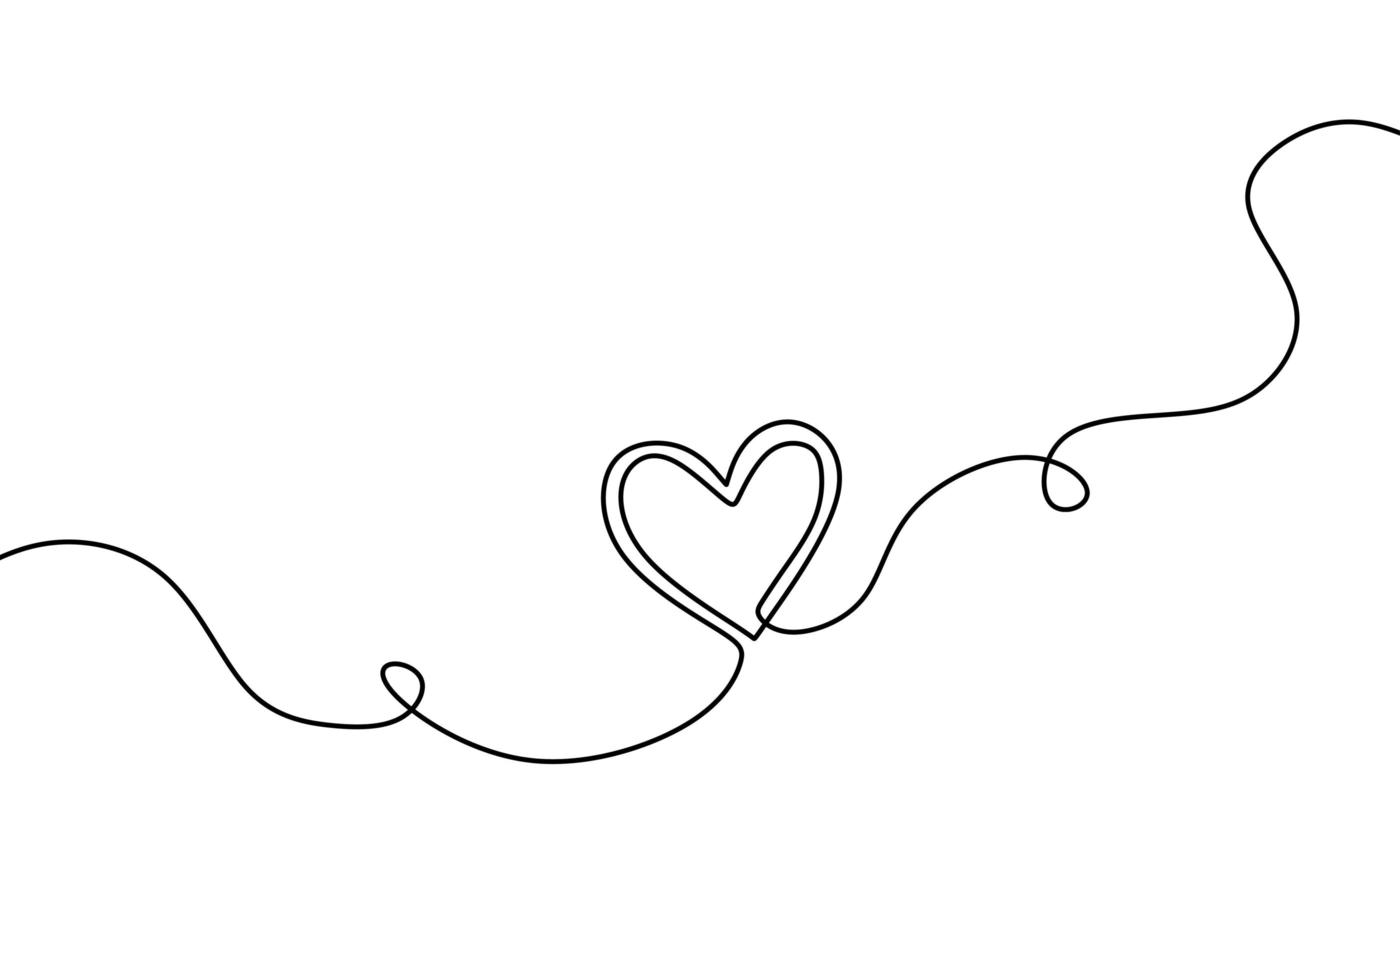 desenho de linha contínua de coração, ilustração em vetor esboço desenhado de uma mão.